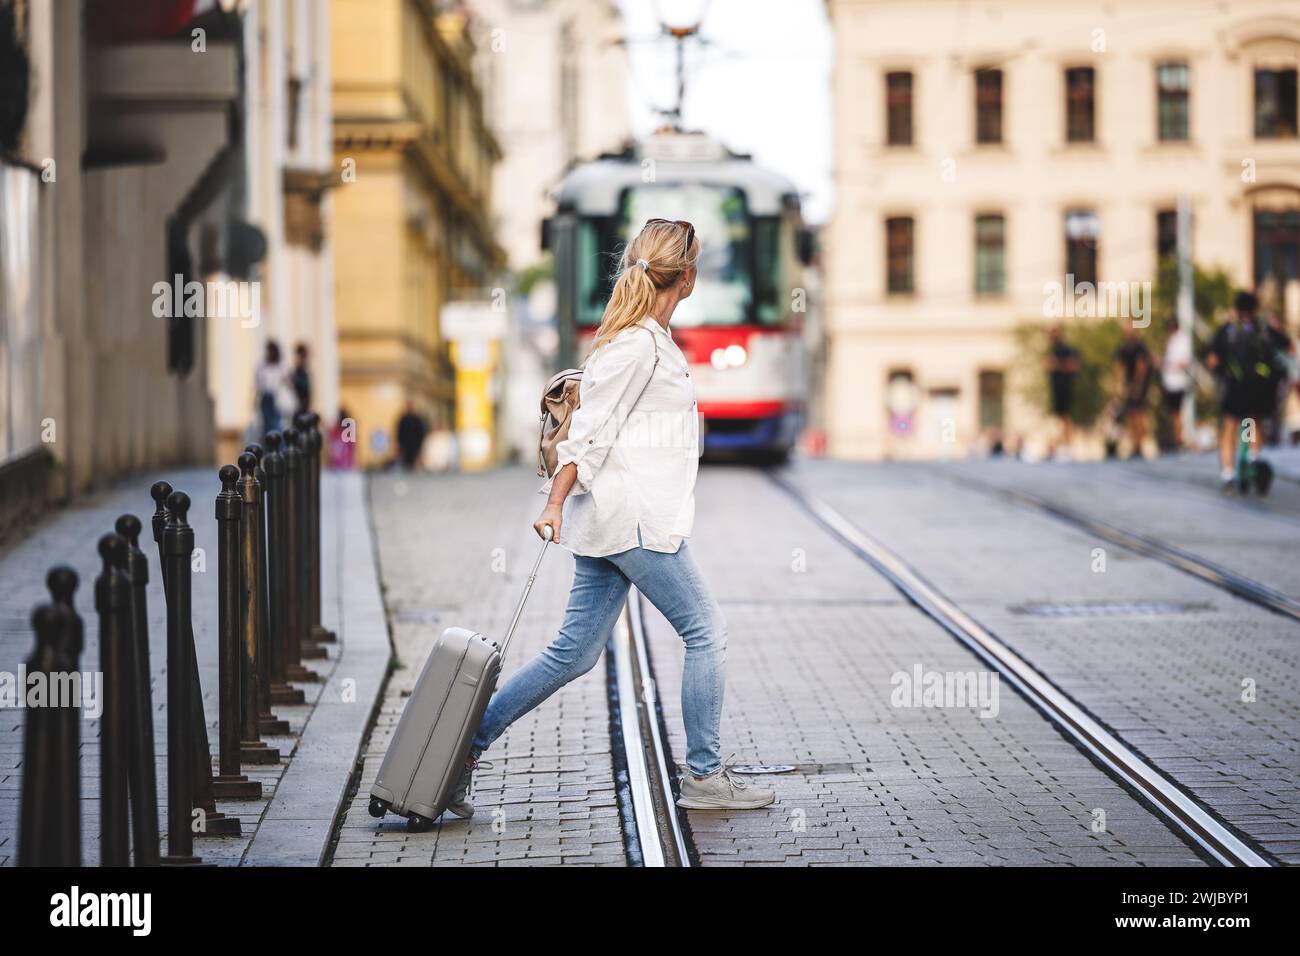 Femme touriste avec valise marche à travers la rue de la ville pendant que le tram arrive. Voyagez prudemment et en toute sécurité avec une assurance et évitez les accidents Banque D'Images